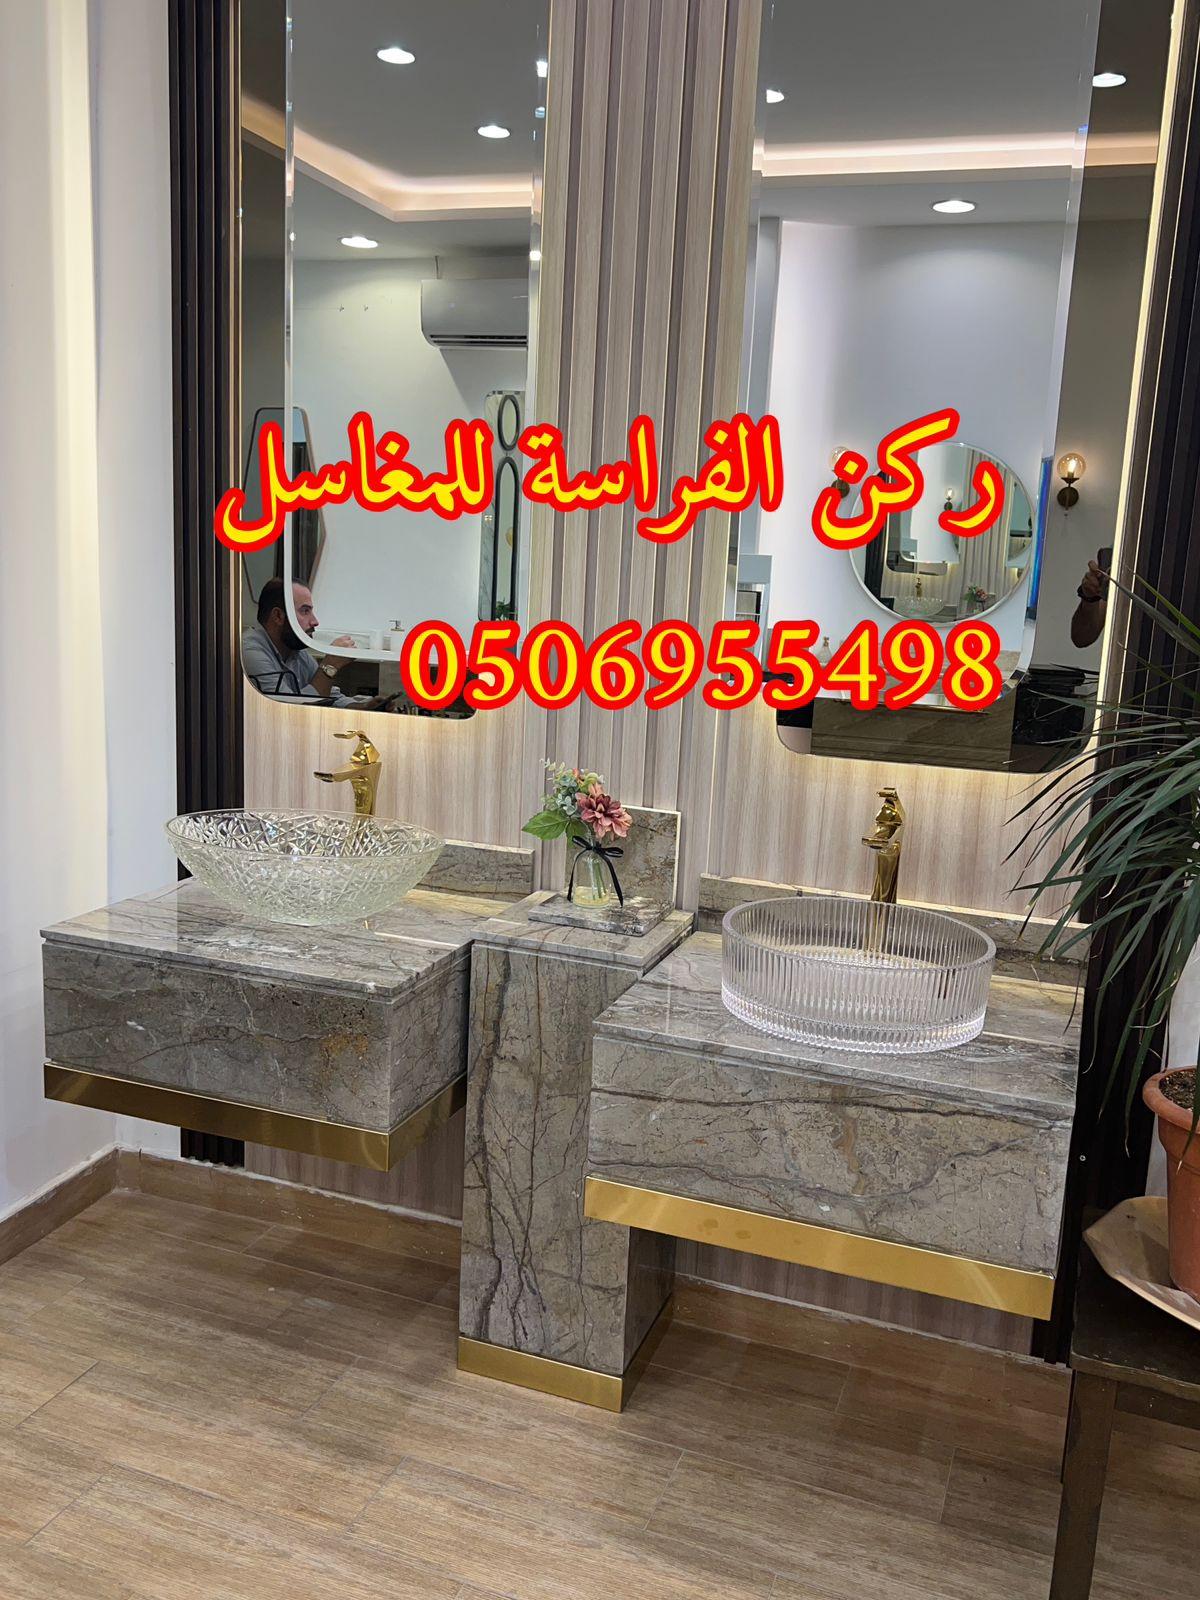 الرياض - تفصيل ديكورات مغاسل حمامات رخام في الرياض,0506955498 425460629